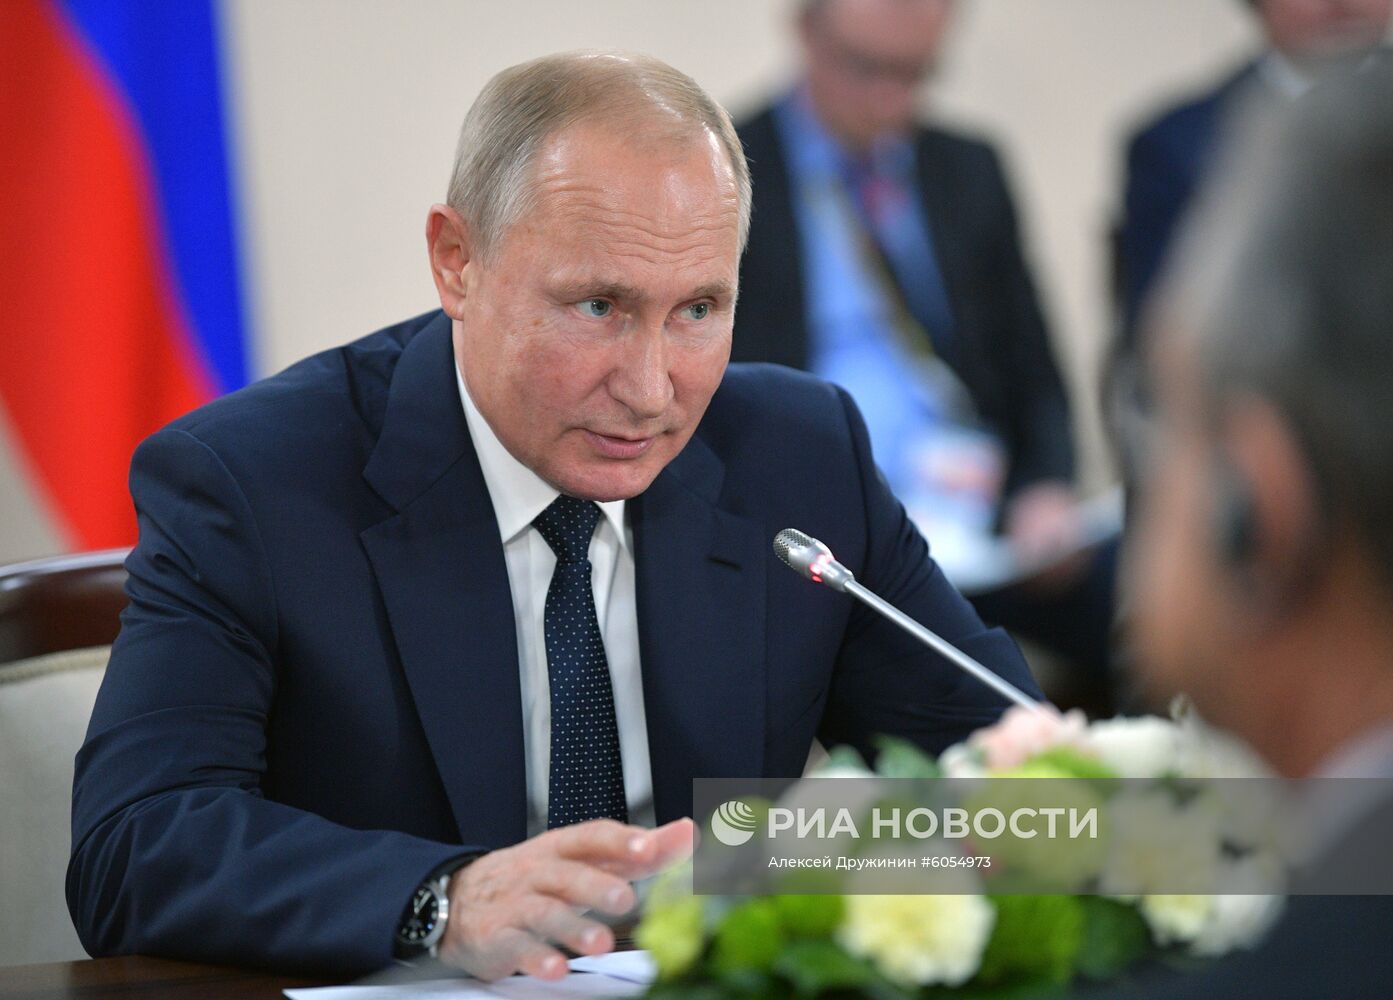 Президент РФ В. Путин принял участие в работе форума "Россия - Африка"